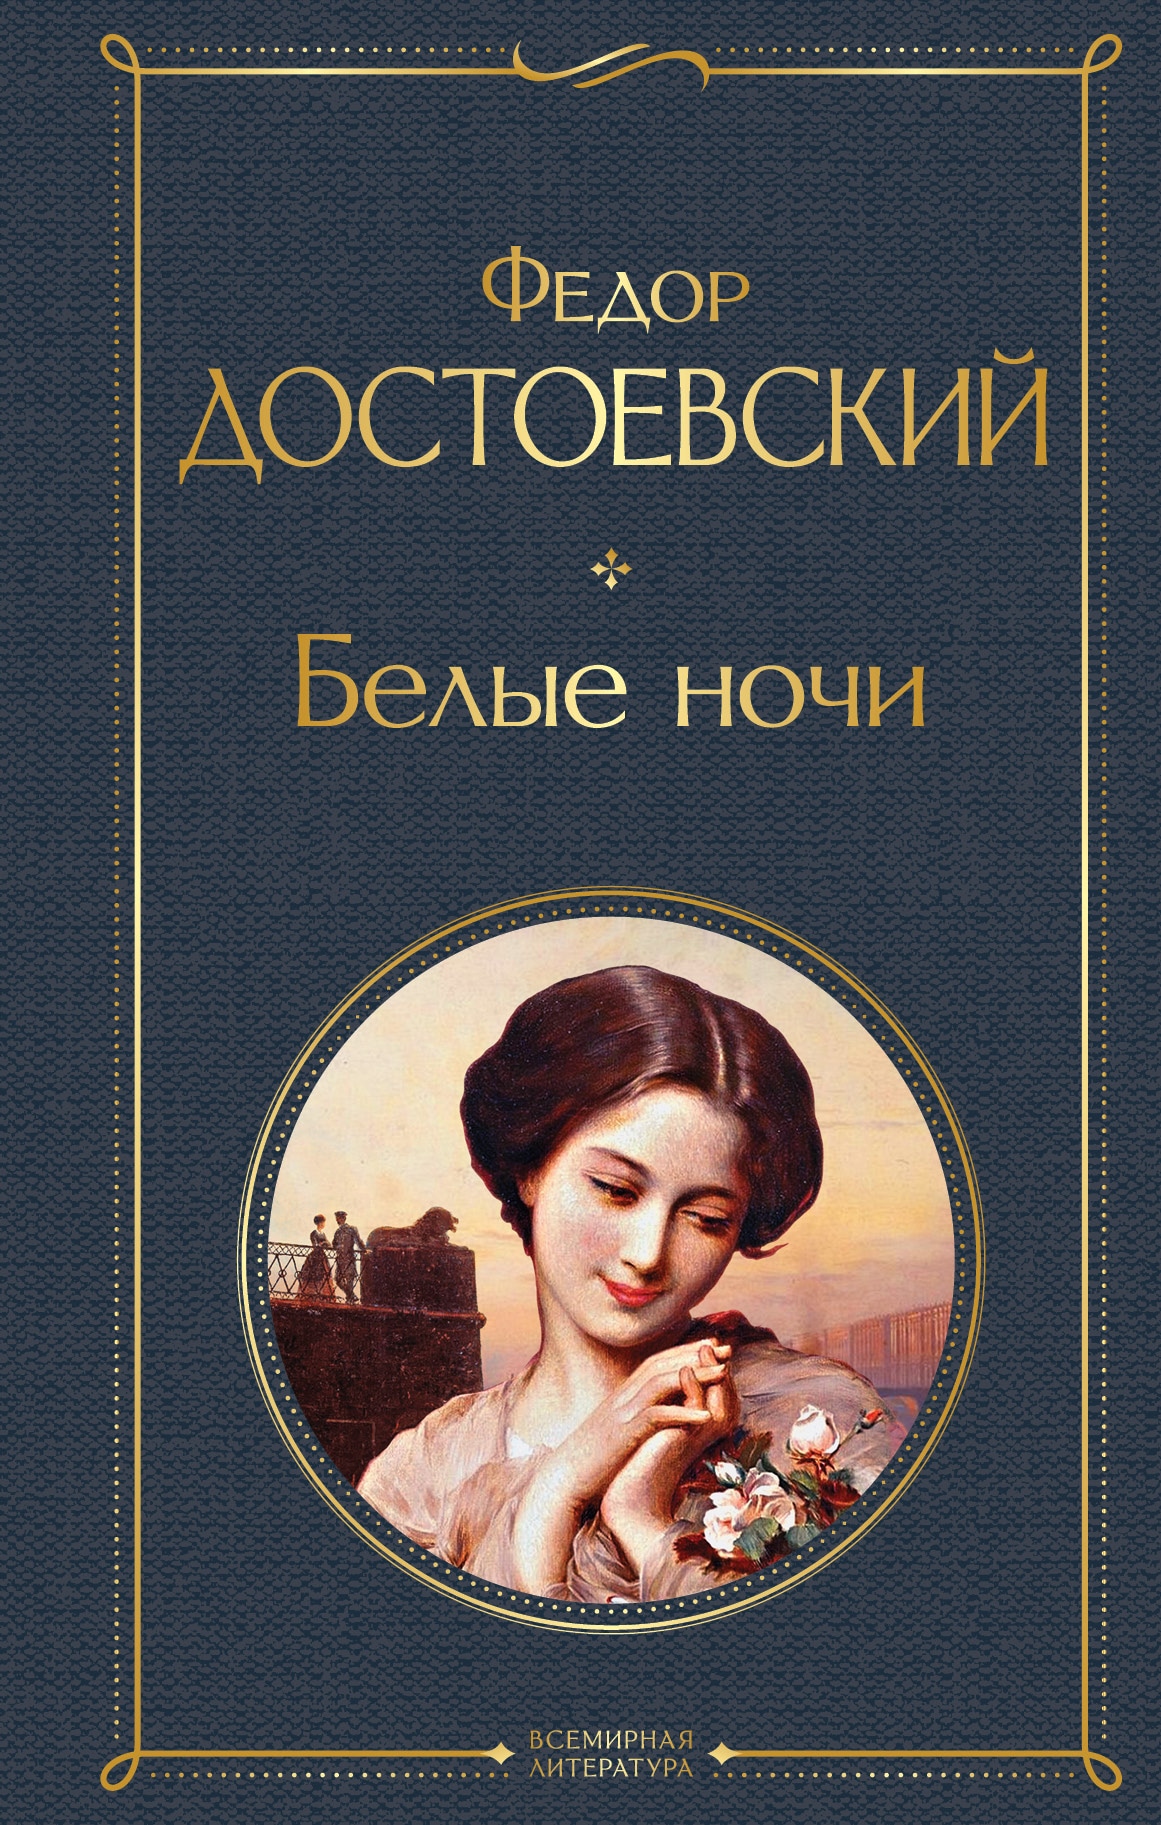 Книга «Белые ночи» Федор Достоевский — 3 сентября 2021 г.